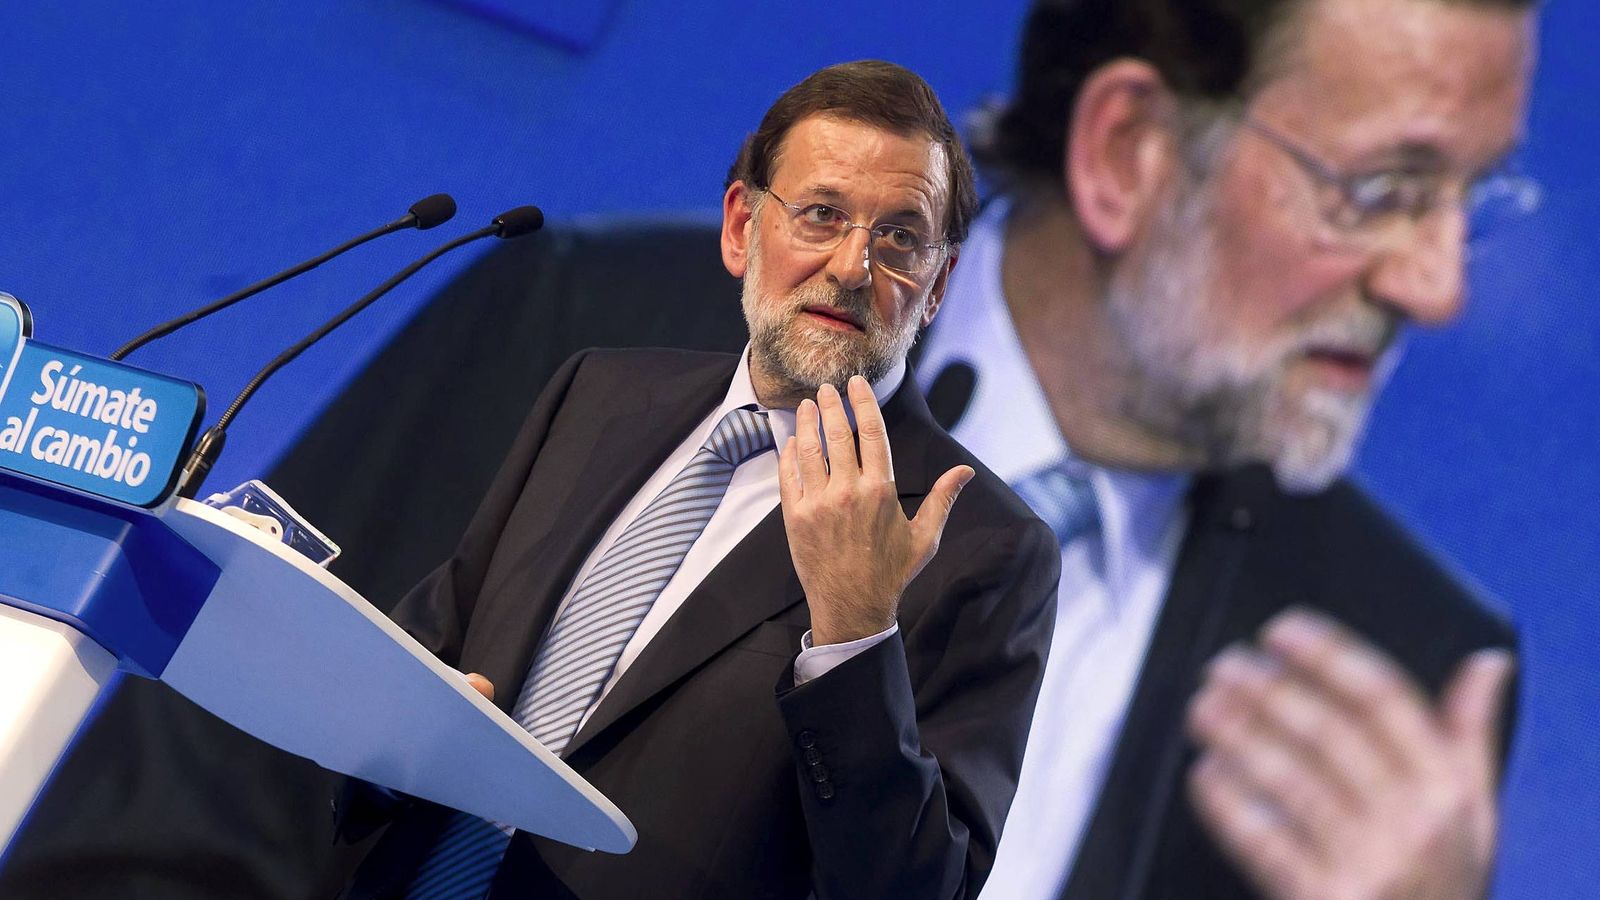 Foto: Mariano Rajoy, durante su intervención en el acto electoral. (Efe)